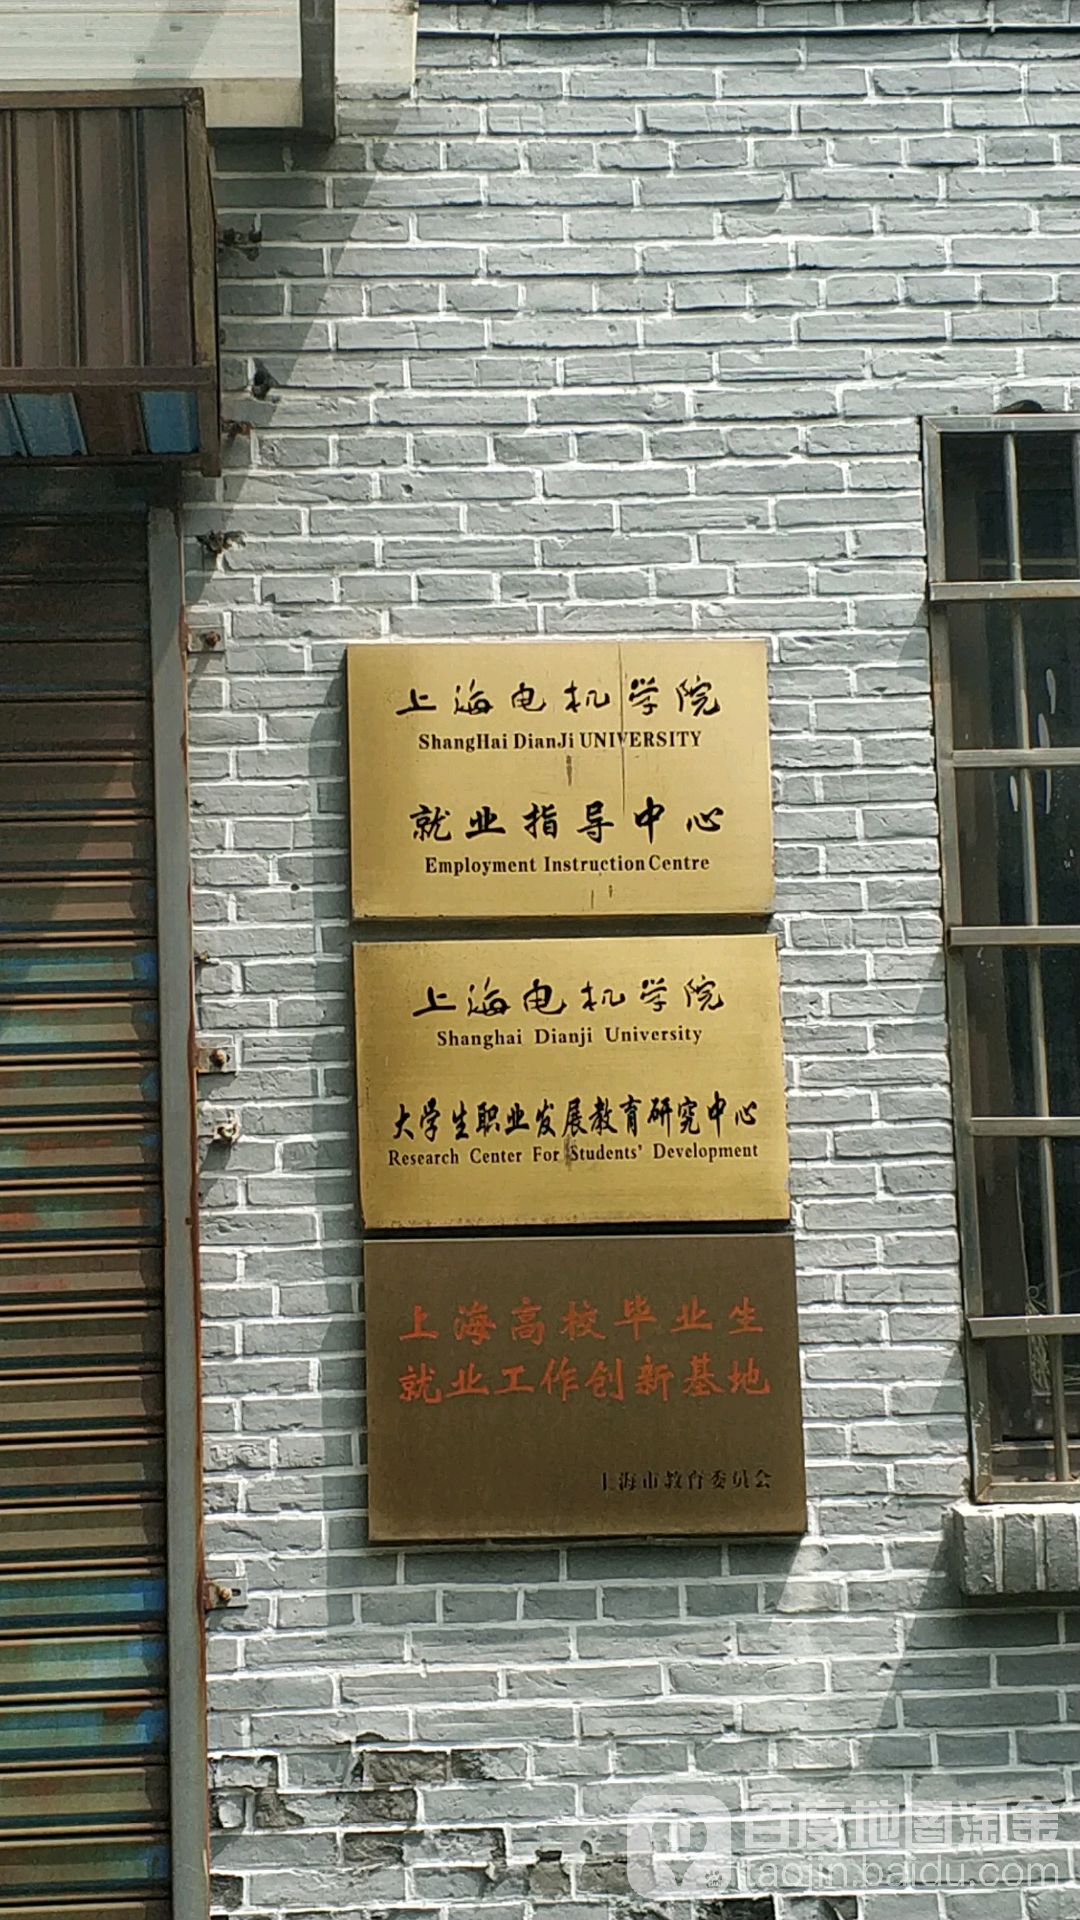 上海电机学院就业指导中心